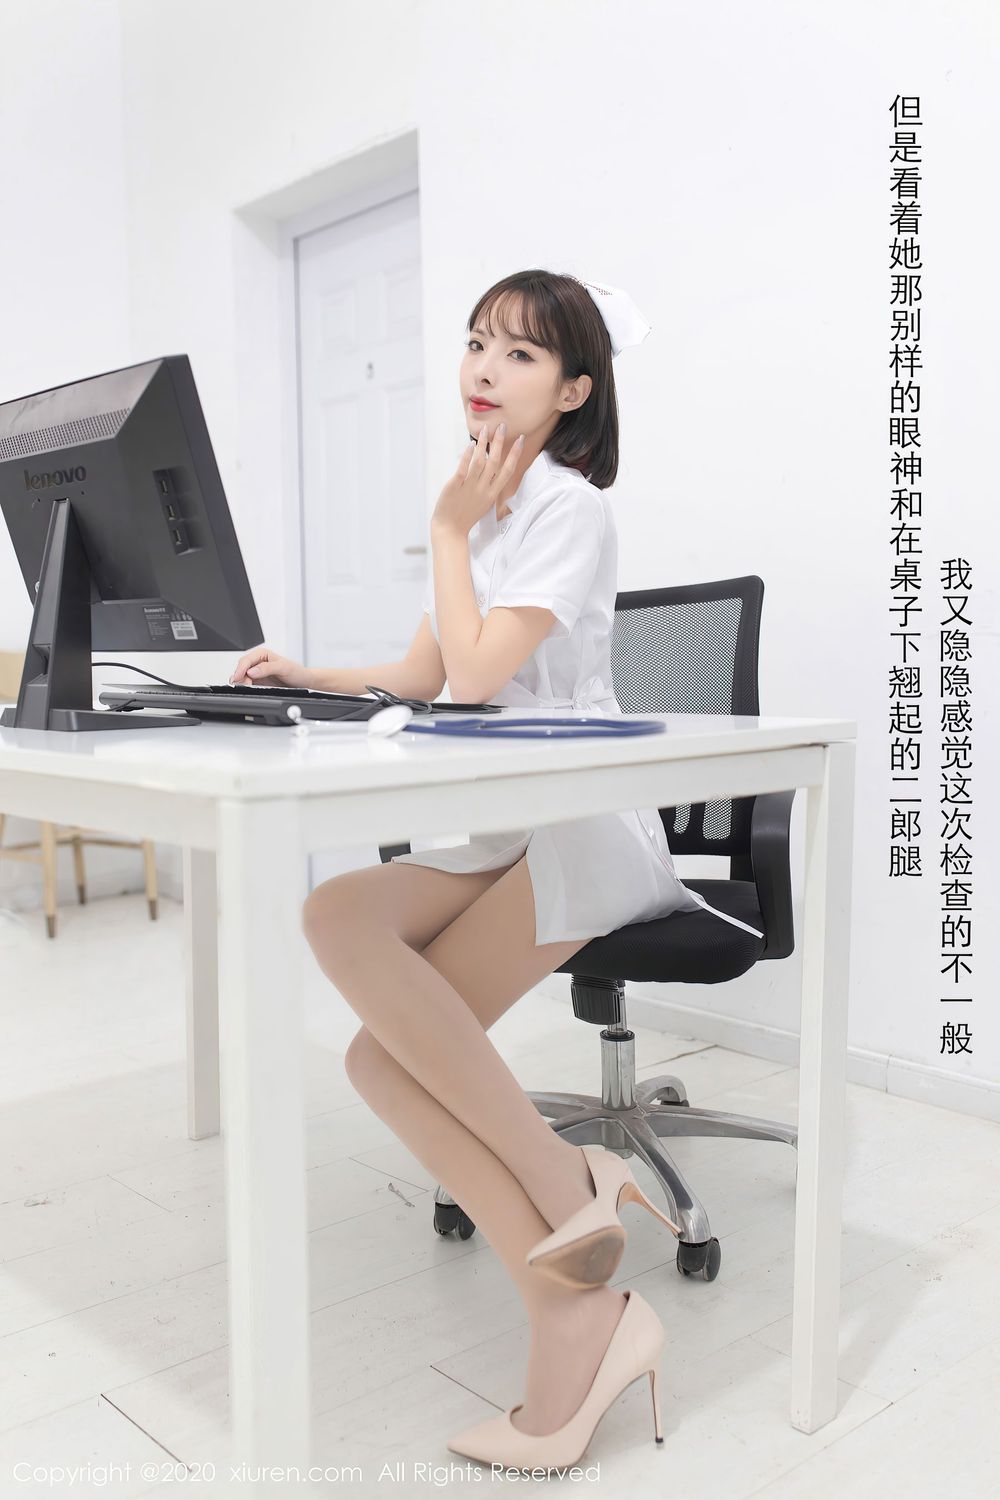 美女模特陈小喵 - 丝袜美腿护士装扮性感写真